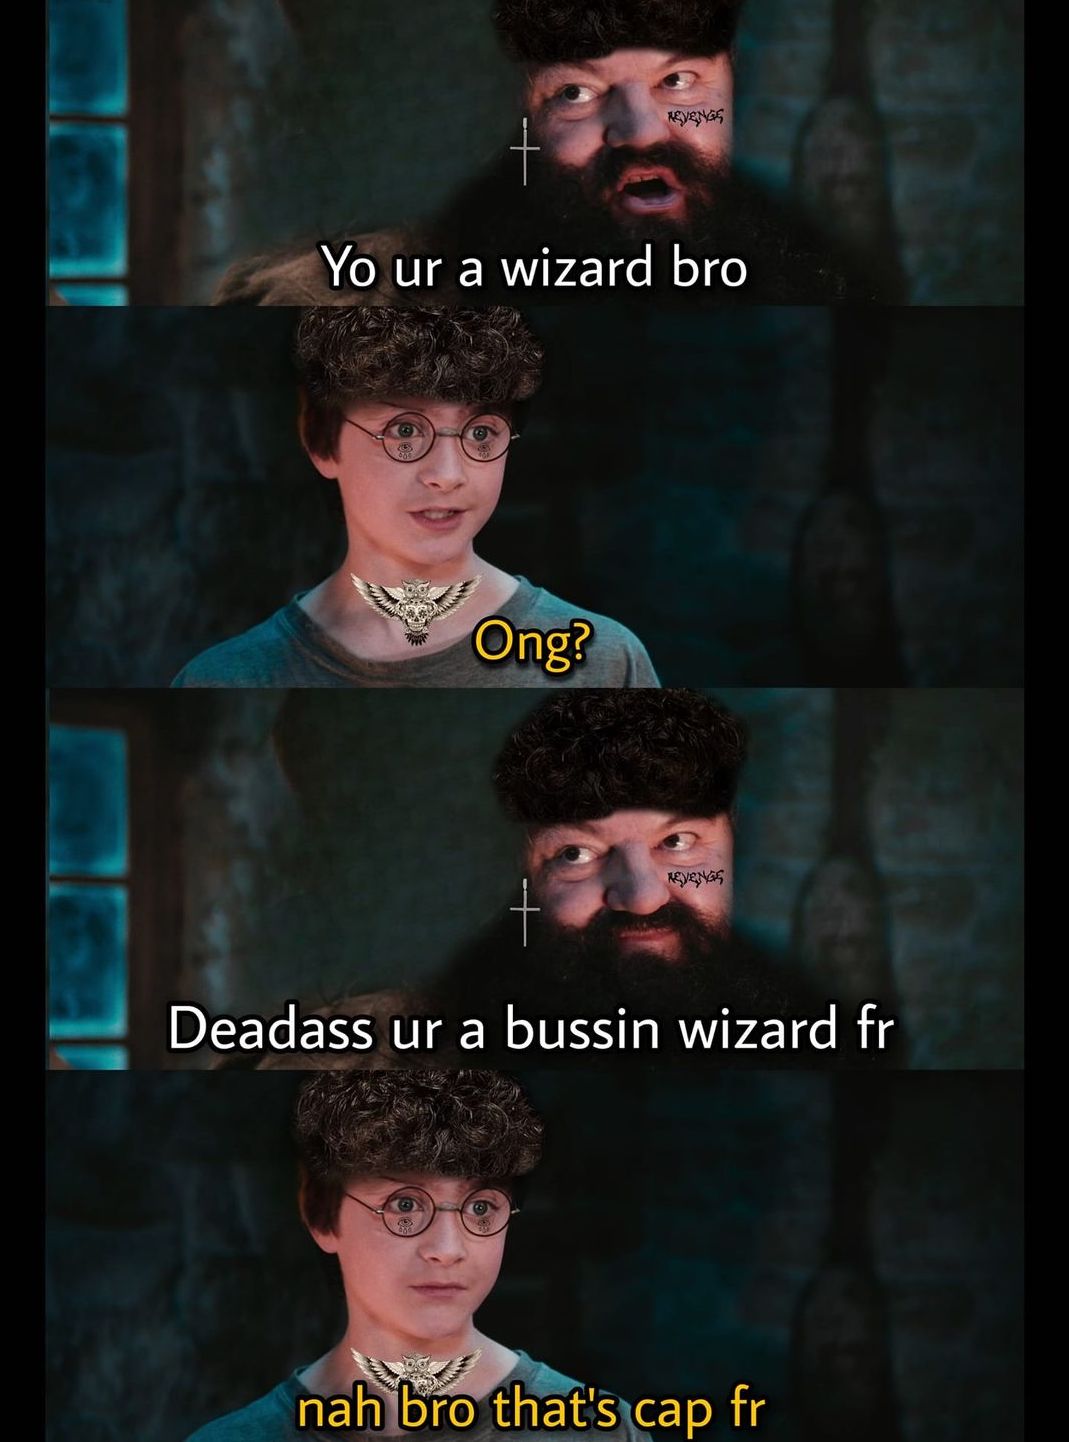 Harry Potter memes - you re a wizard harry - Yo ur a wizard bro Ong? Revengs Revengs Deadass ur a bussin wizard fr nah bro that's cap fr